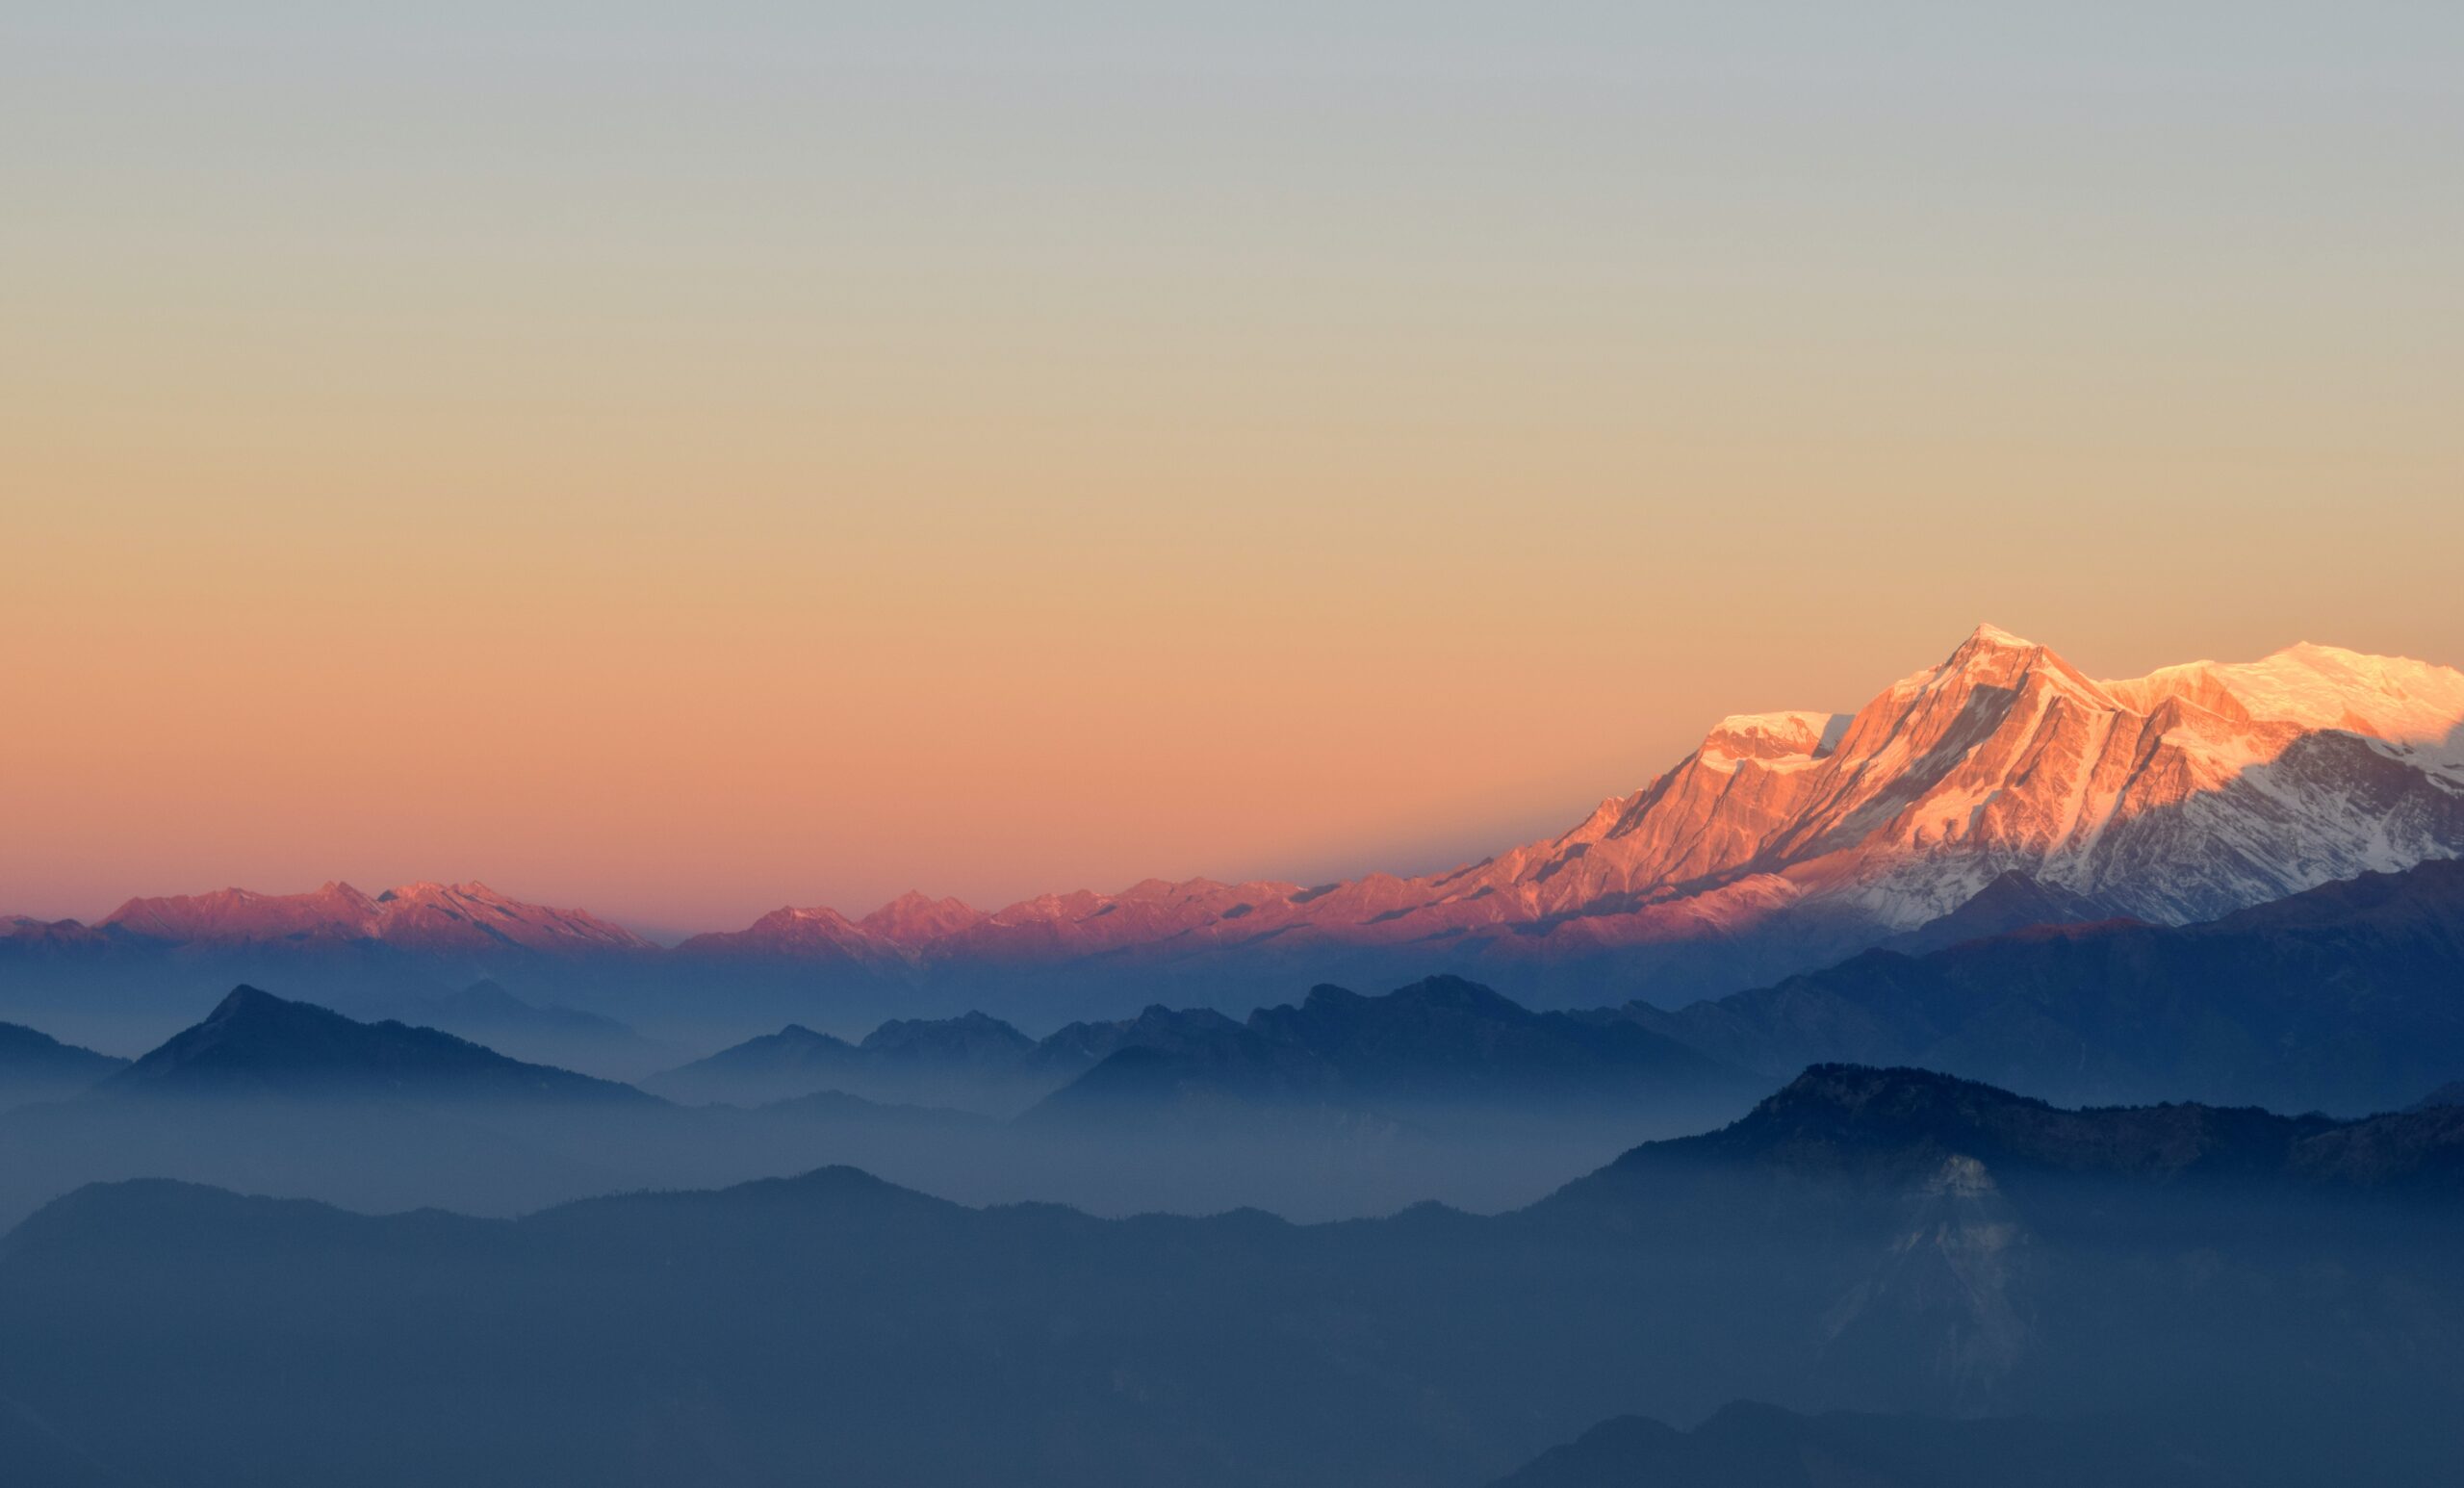 Jardins de thé enveloppés de brume dans les montagnes de l'Himalaya pour la sous-catégorie 'Sérénité Himalayenne'.